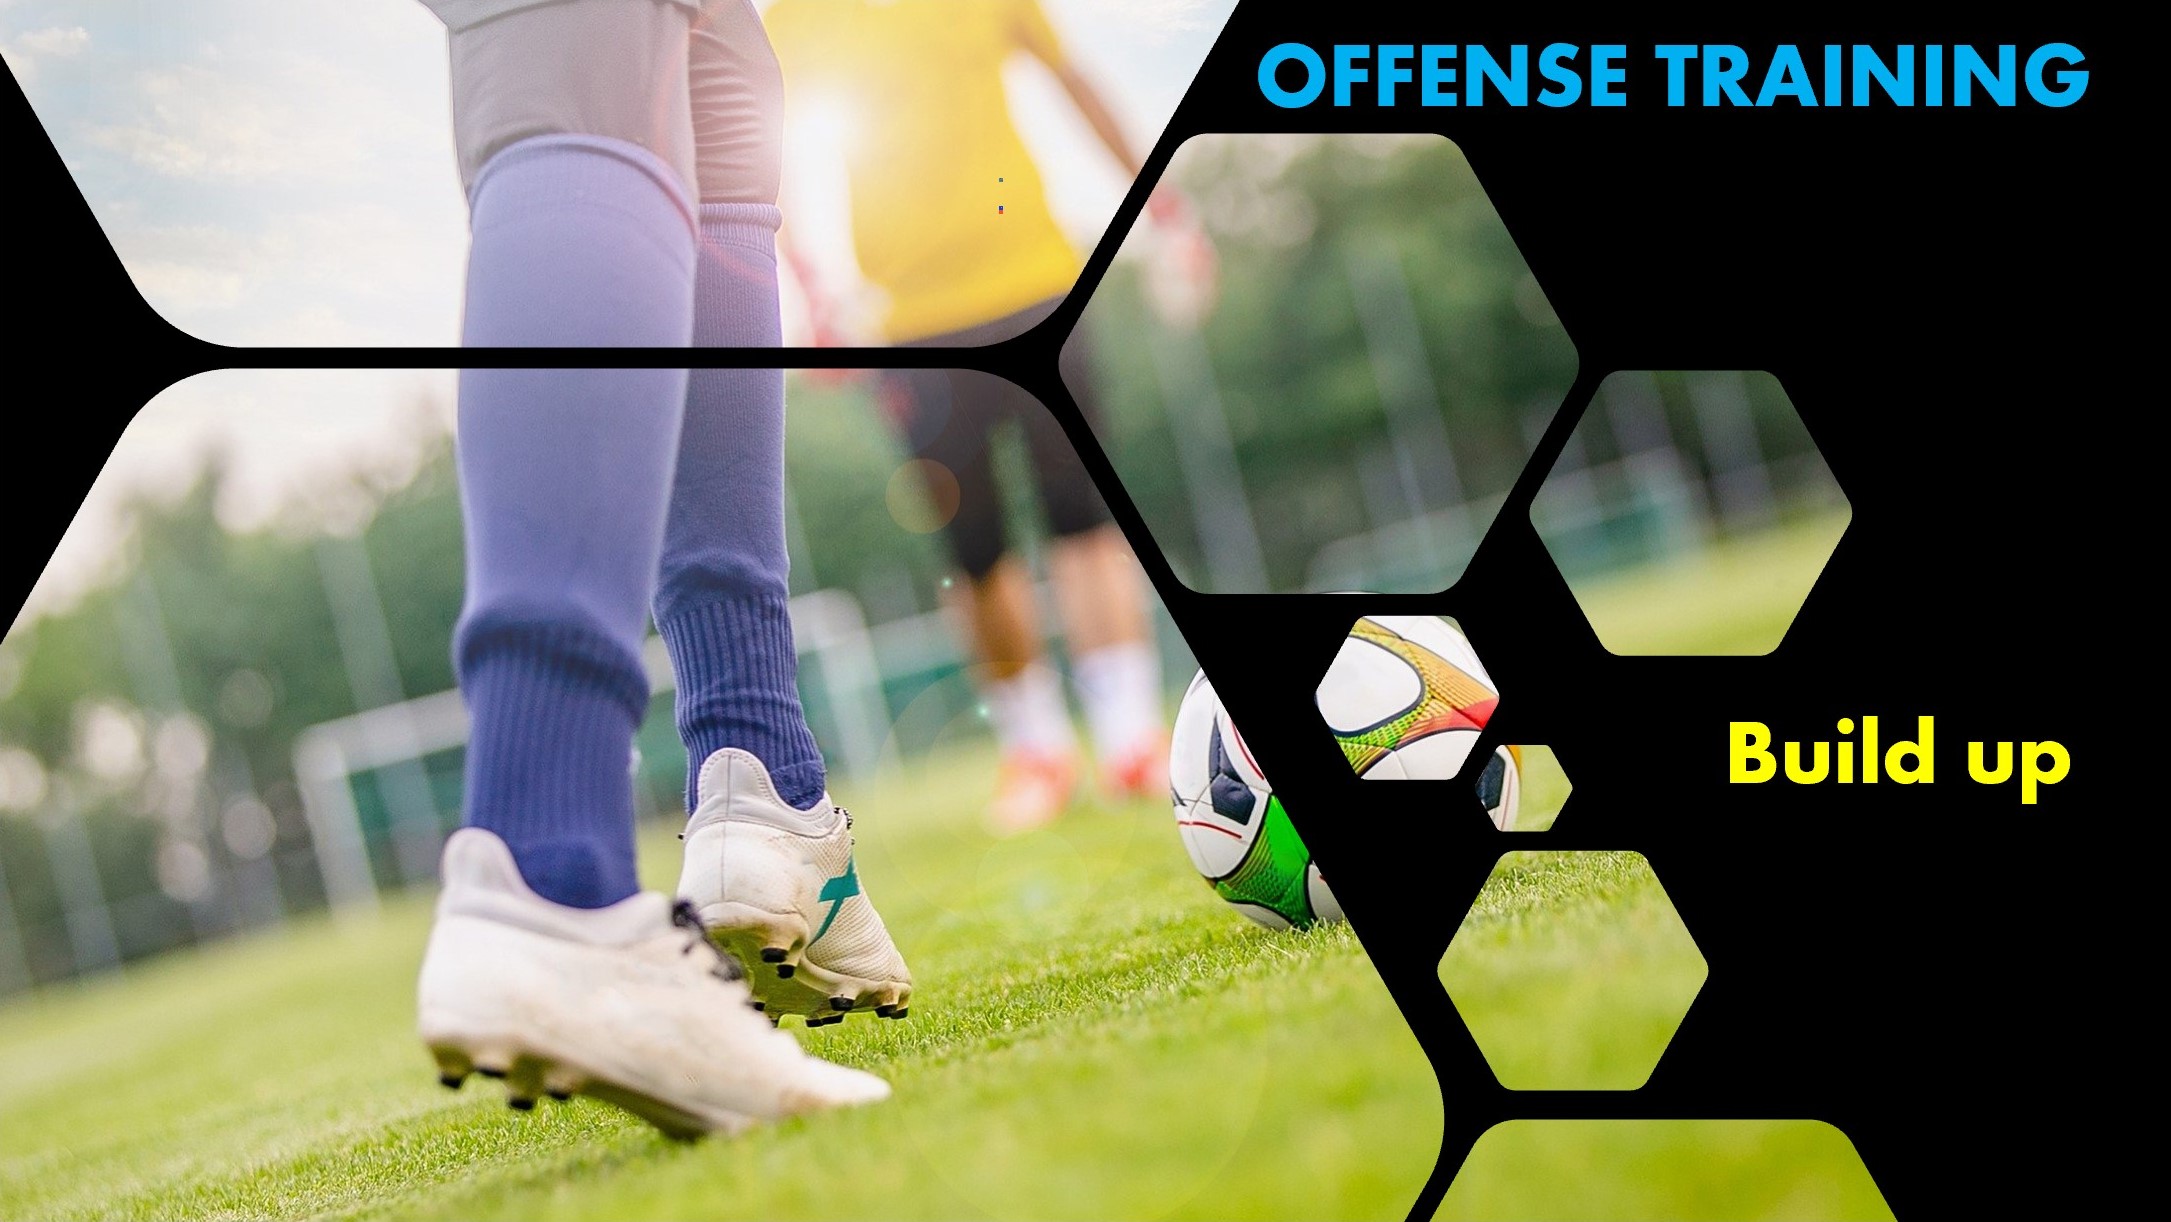 ビルドアップ 引きつけて離す 攻撃の組み立ての基本を学ぶトレーニング 少年サッカー 練習 Football Way